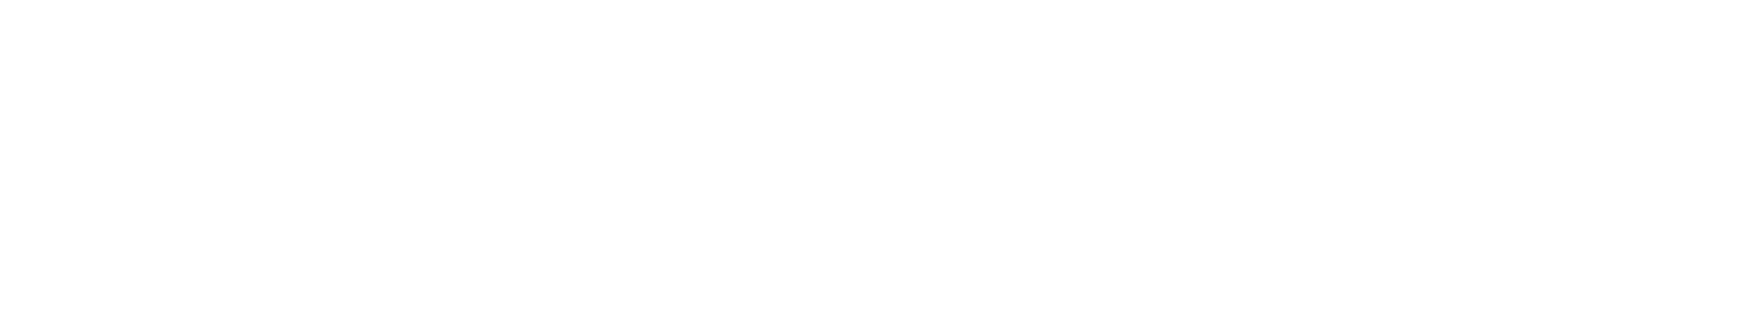 LIG Marine Managers logo